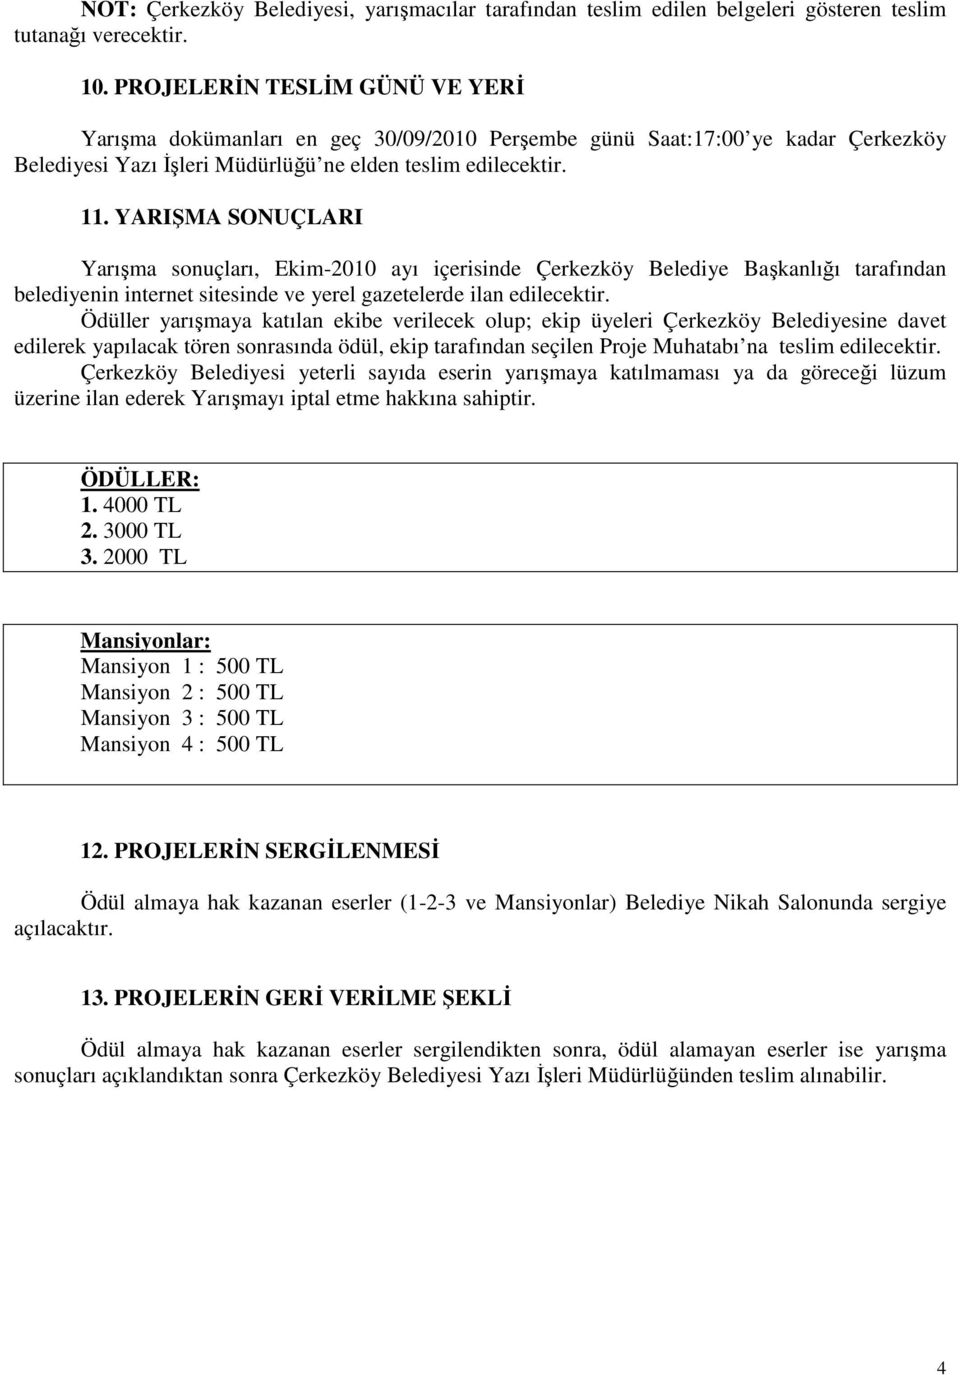 YARIŞMA SONUÇLARI Yarışma sonuçları, Ekim-2010 ayı içerisinde Çerkezköy Belediye Başkanlığı tarafından belediyenin internet sitesinde ve yerel gazetelerde ilan edilecektir.